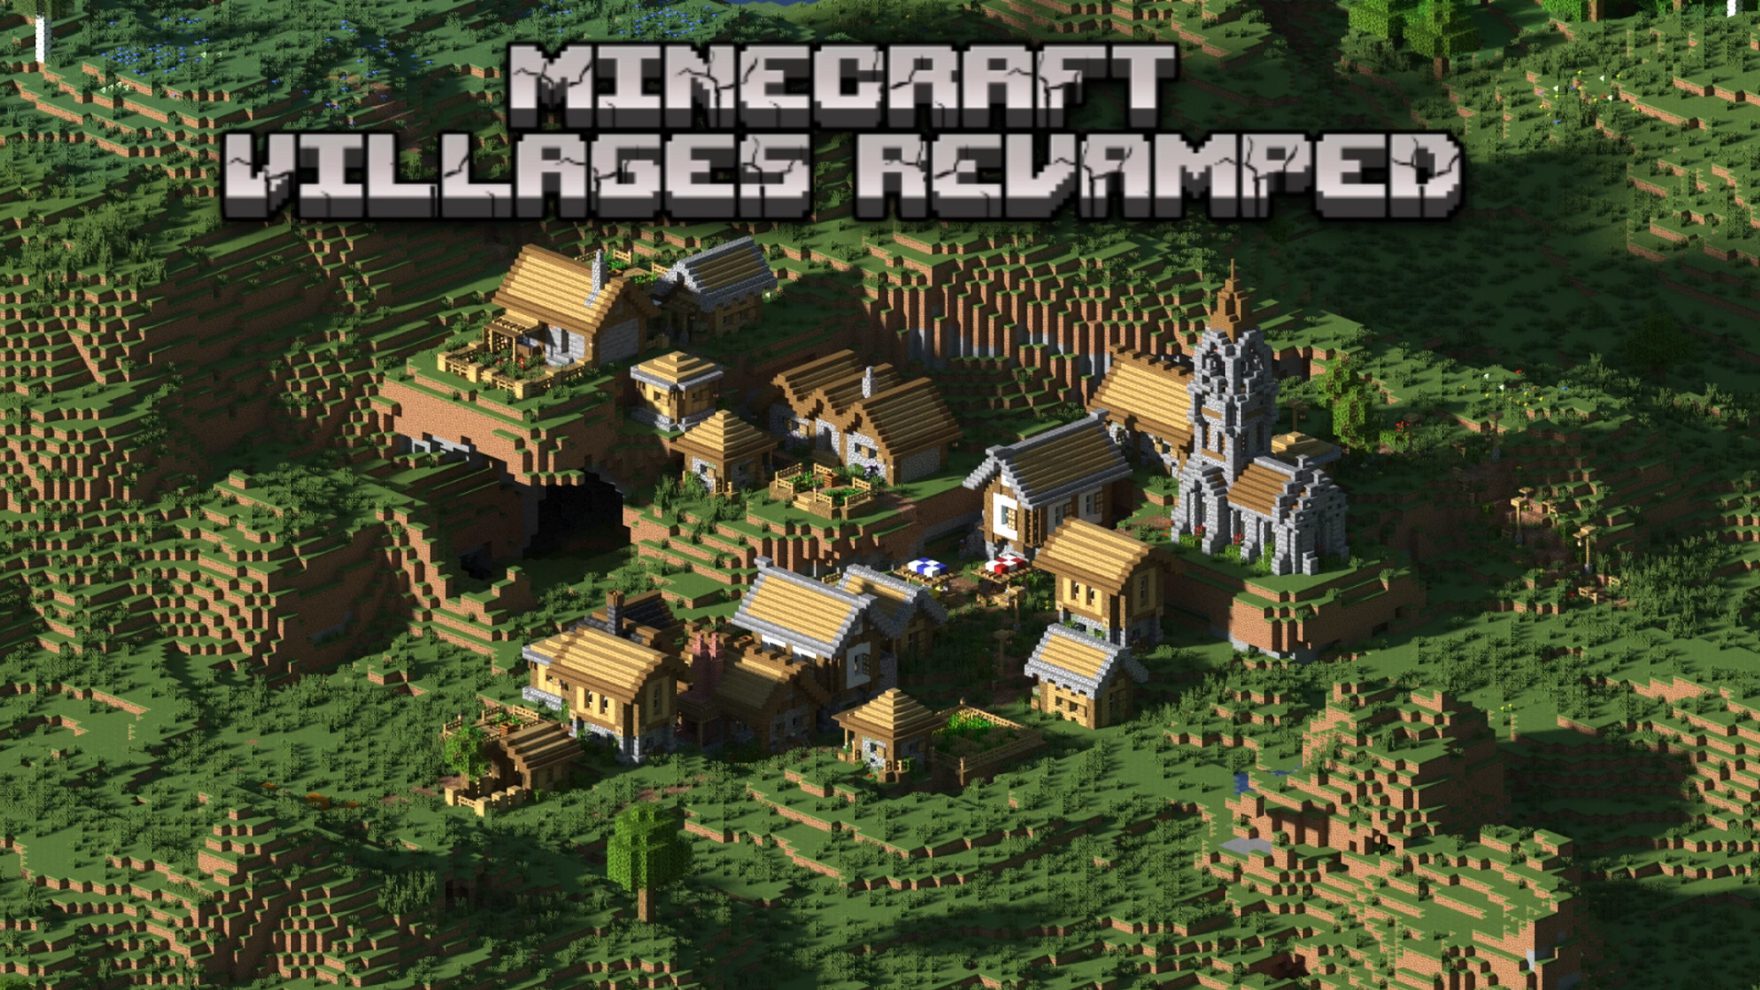 Revamped Villages Data Pack (1.19.4, 1.19.2) - Better Villages! 2